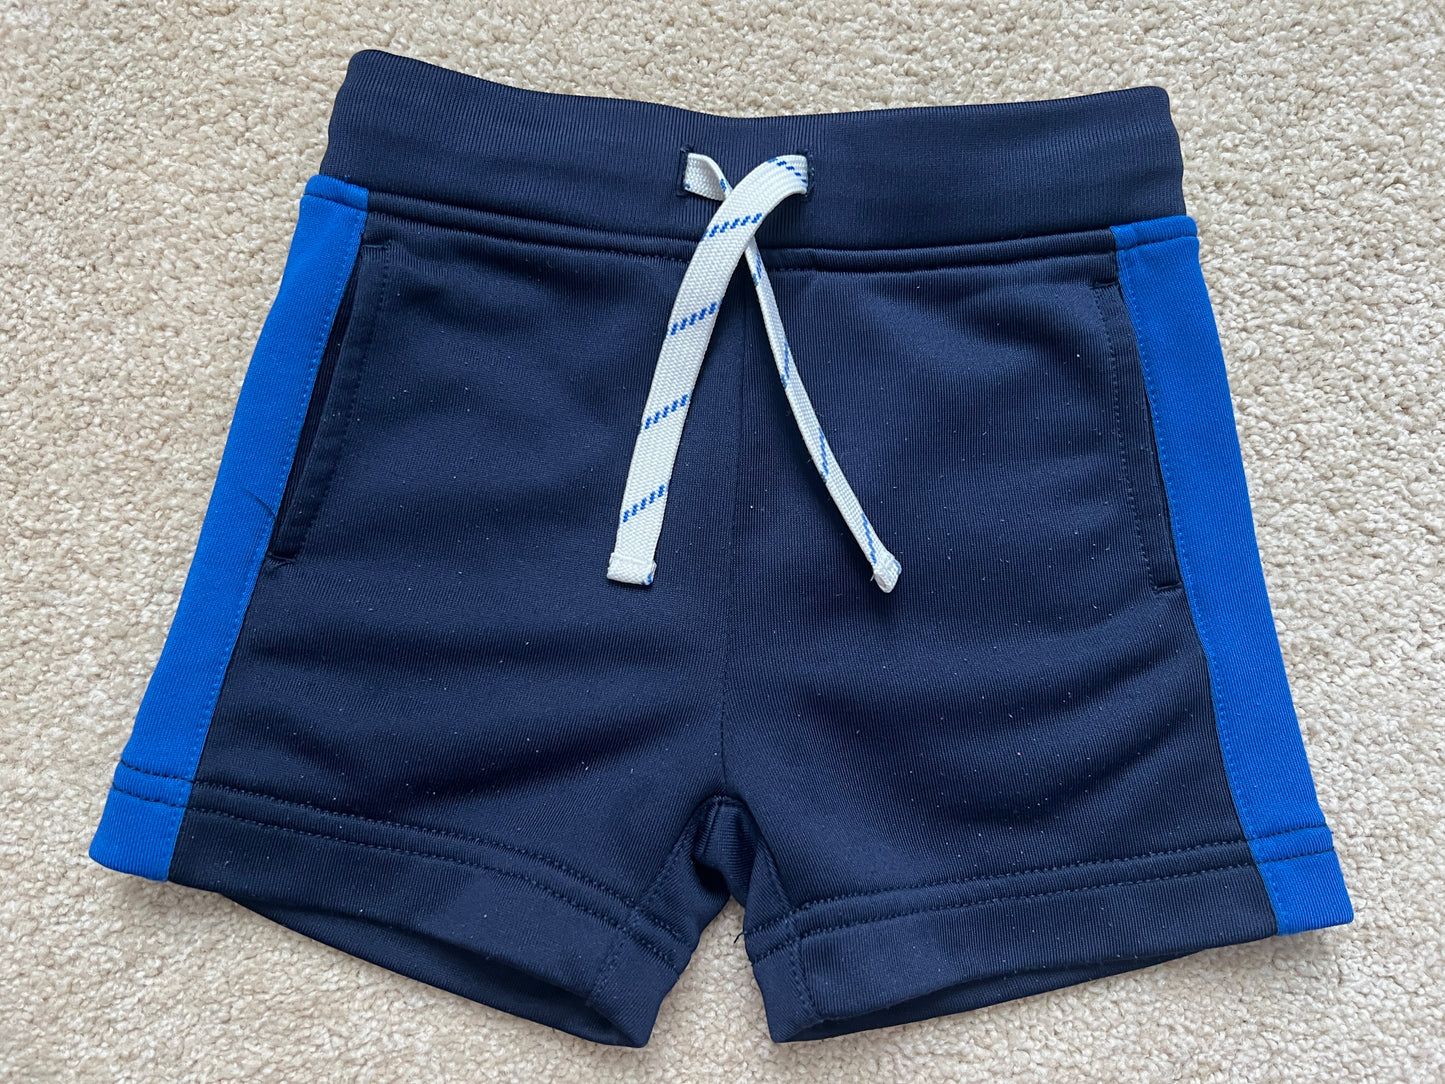 Boys Crewcuts shorts, 2-3 yr, GUC